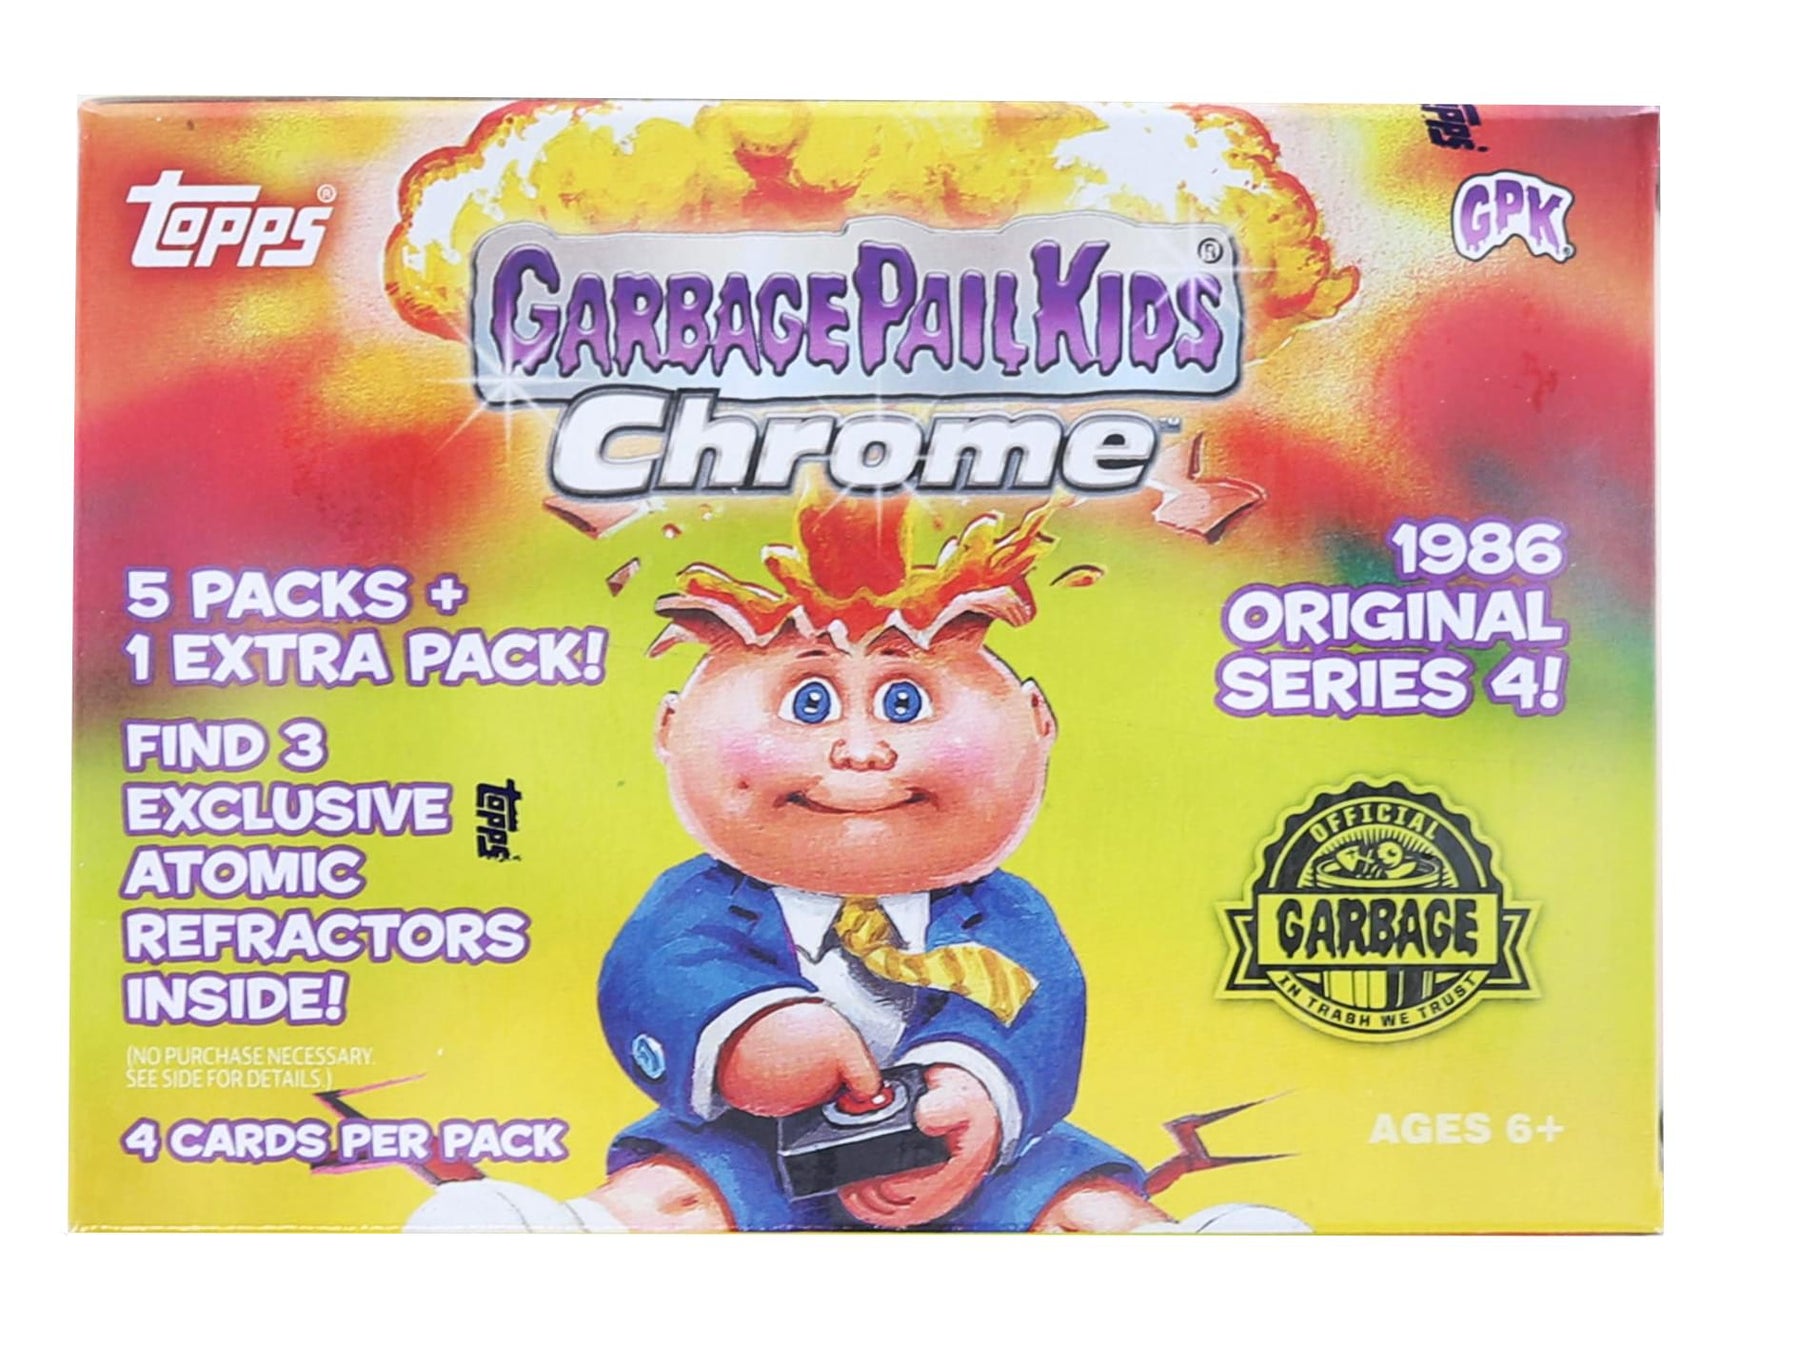 Garbage Pail Kids 2021 Topps Chrome Series 4 Blaster Box